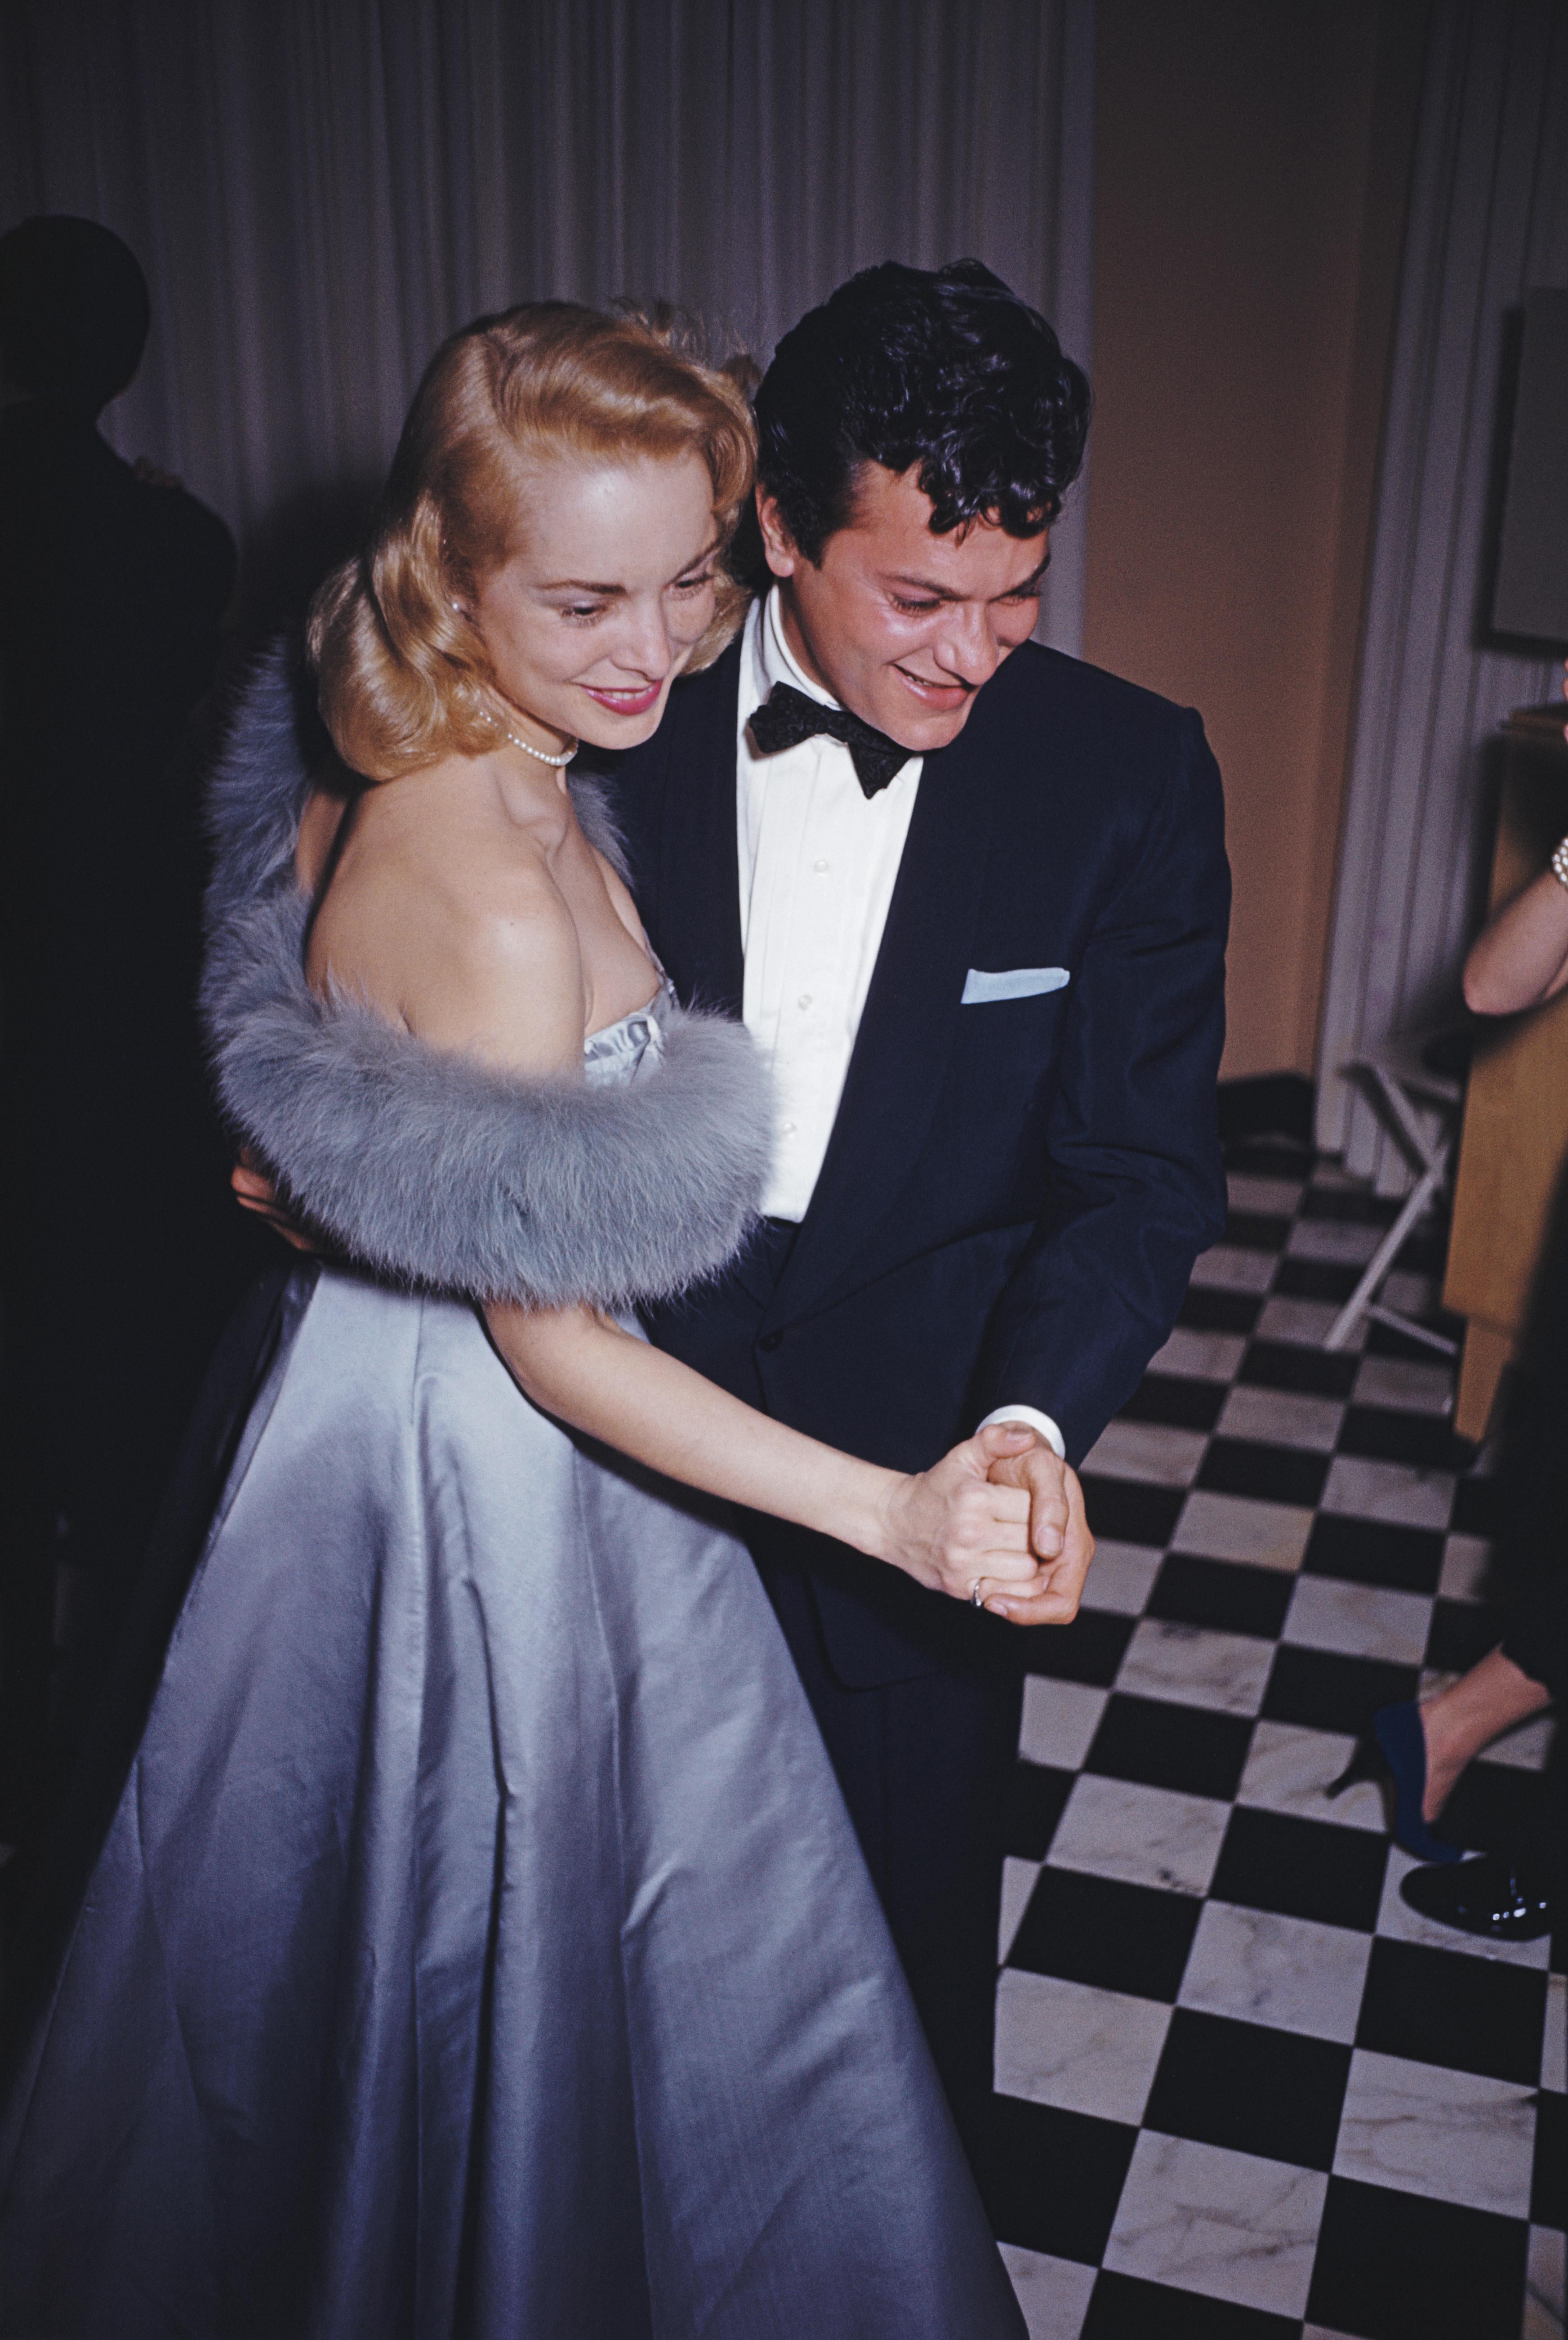 let's Dance  1954 Slim Aarons Limited Estate Edition Druck 

Die Filmstars Tony Curtis und seine Frau Janet Leigh tanzen auf einer Party im Haus von James Mason in Beverly Hills, 1954. 

Hergestellt aus der Originalfolie
Mitgeliefertes